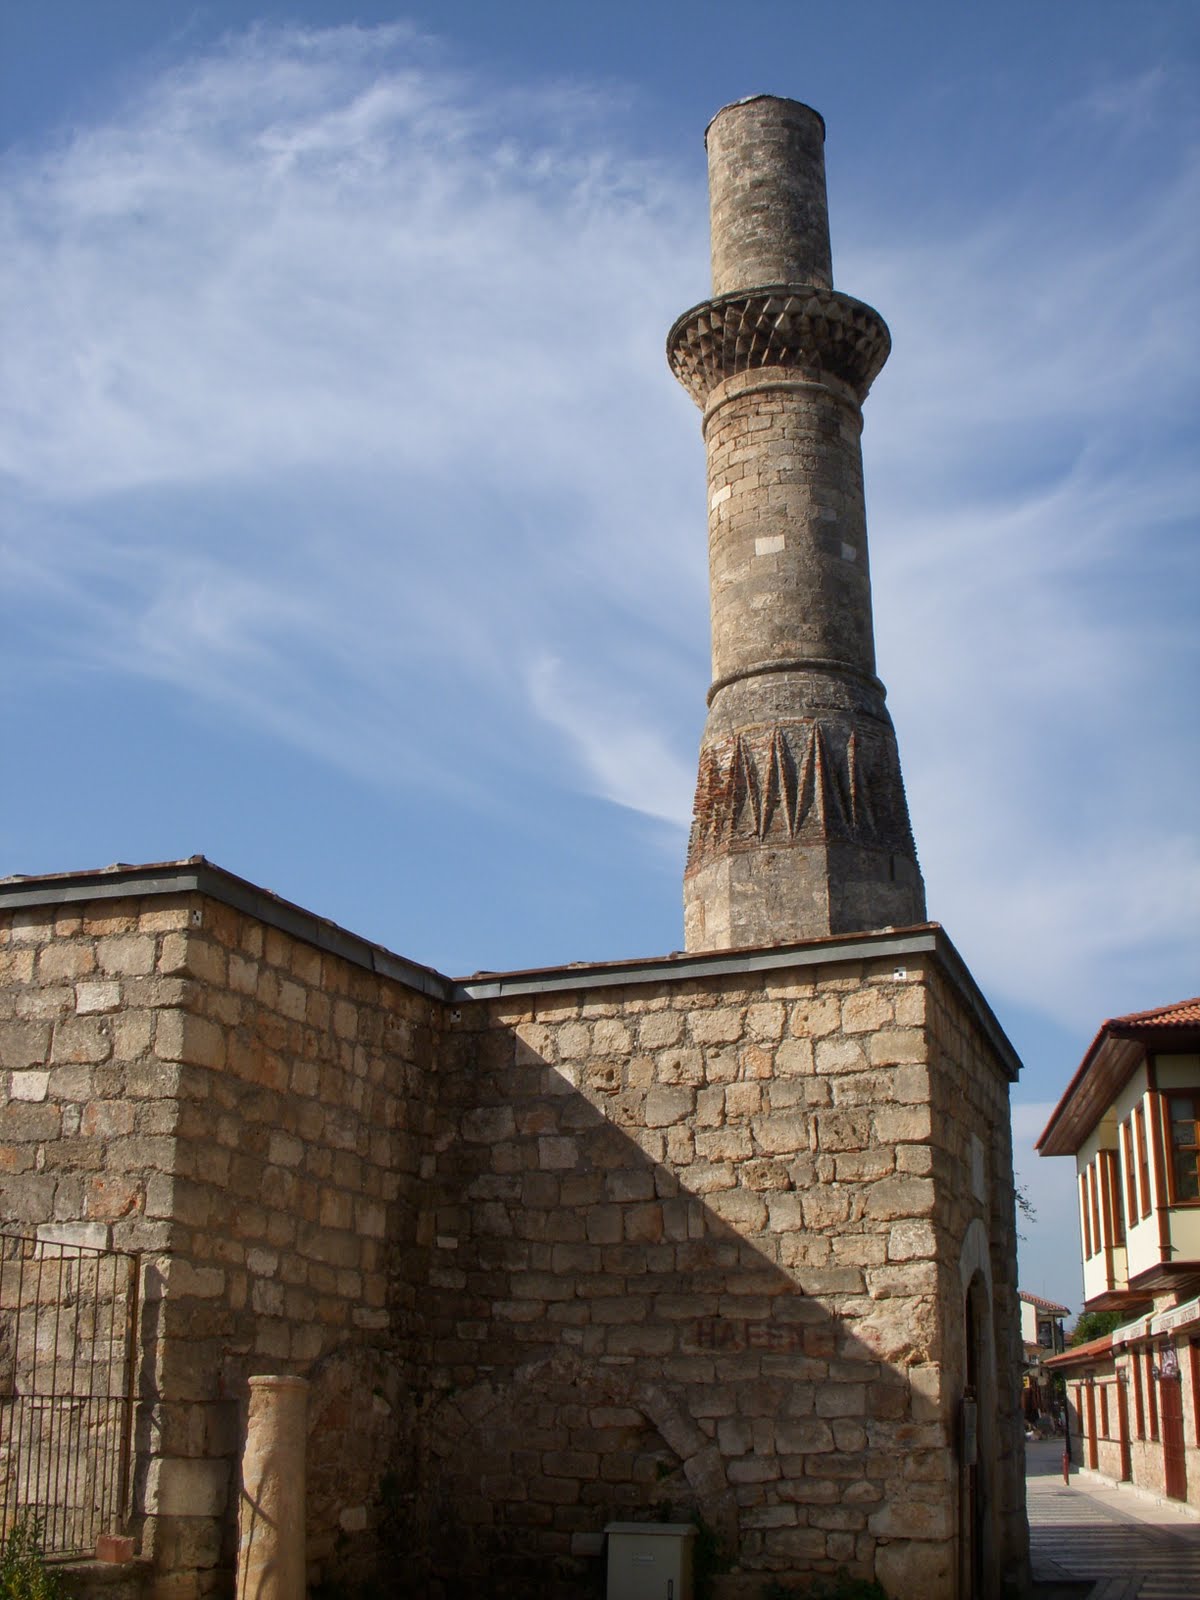 Kesik Minareli Camii - Gezilecek Yerler